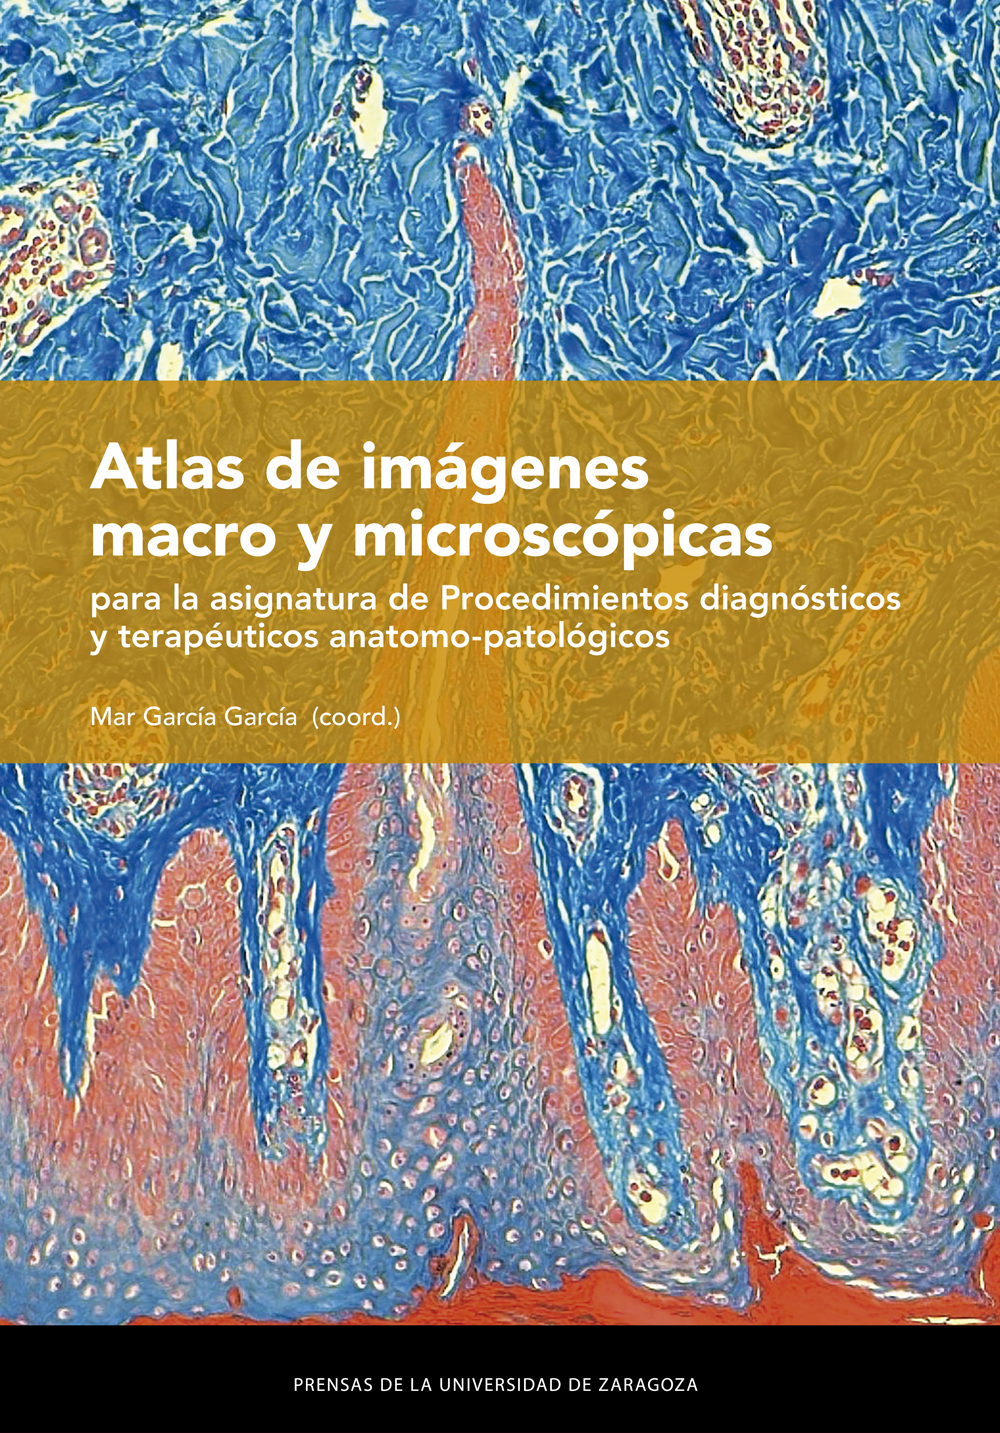 Atlas de imágenes macro y microscópicas